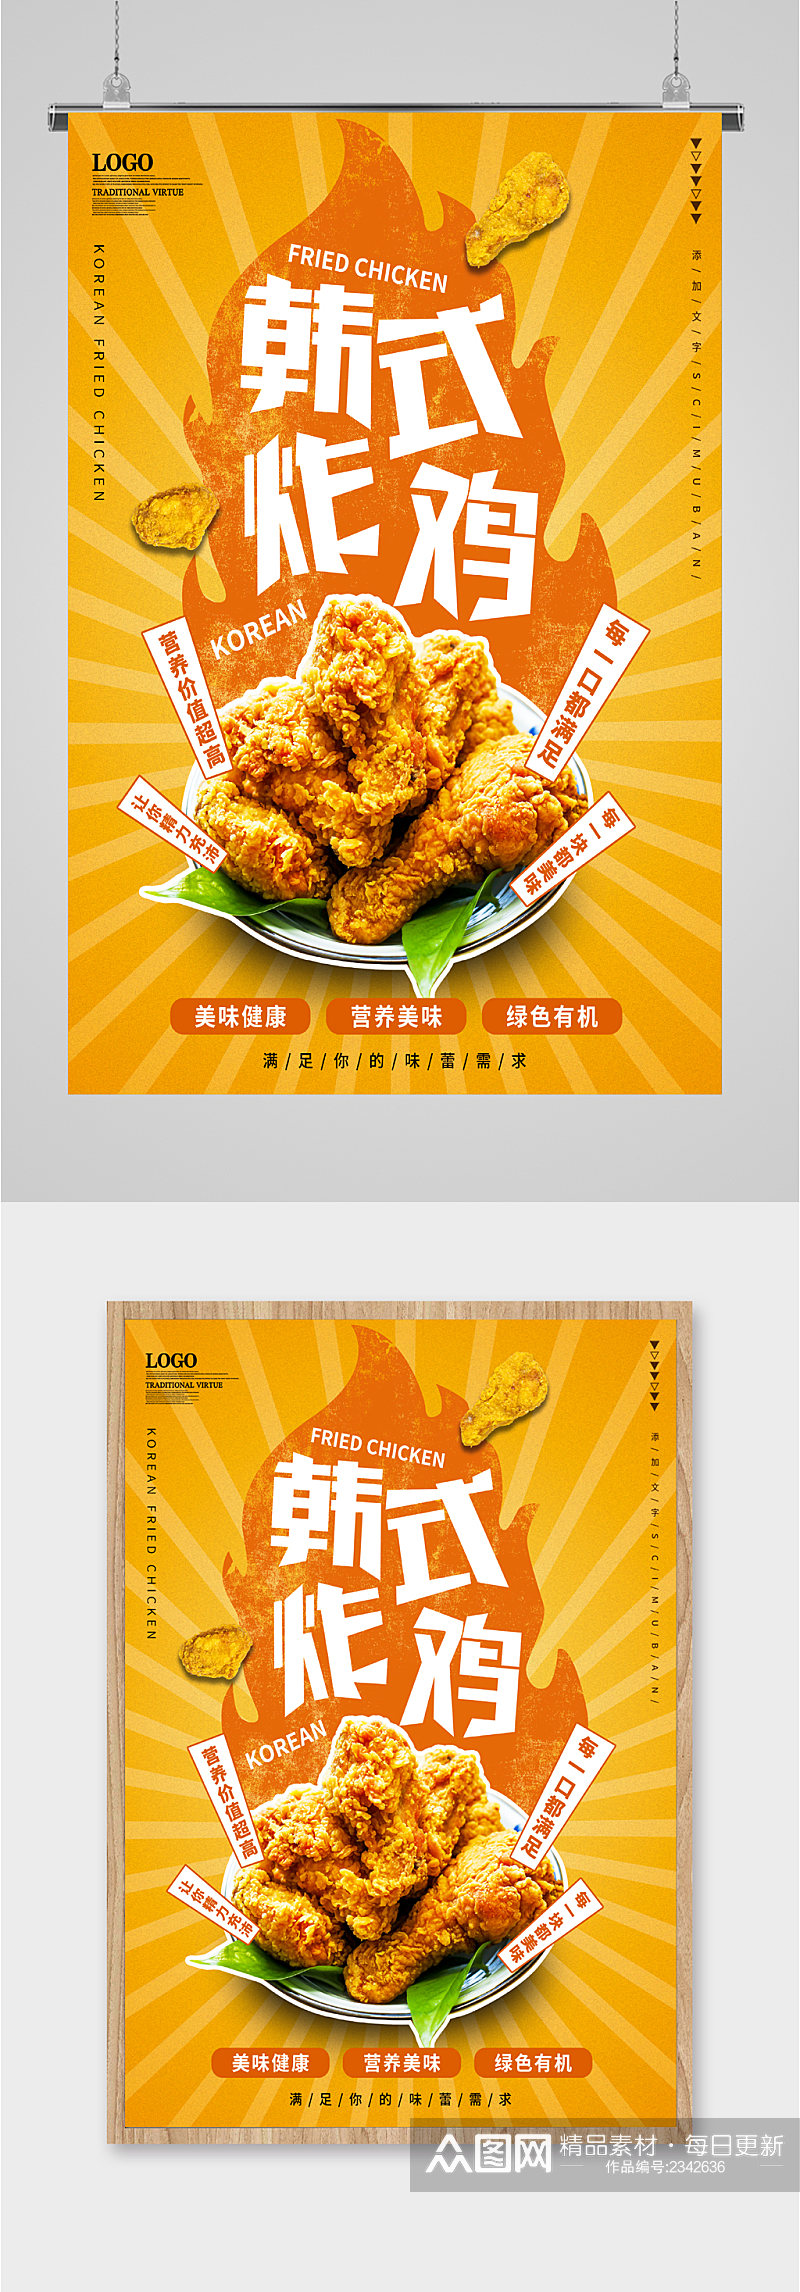 韩式炸鸡美食海报素材